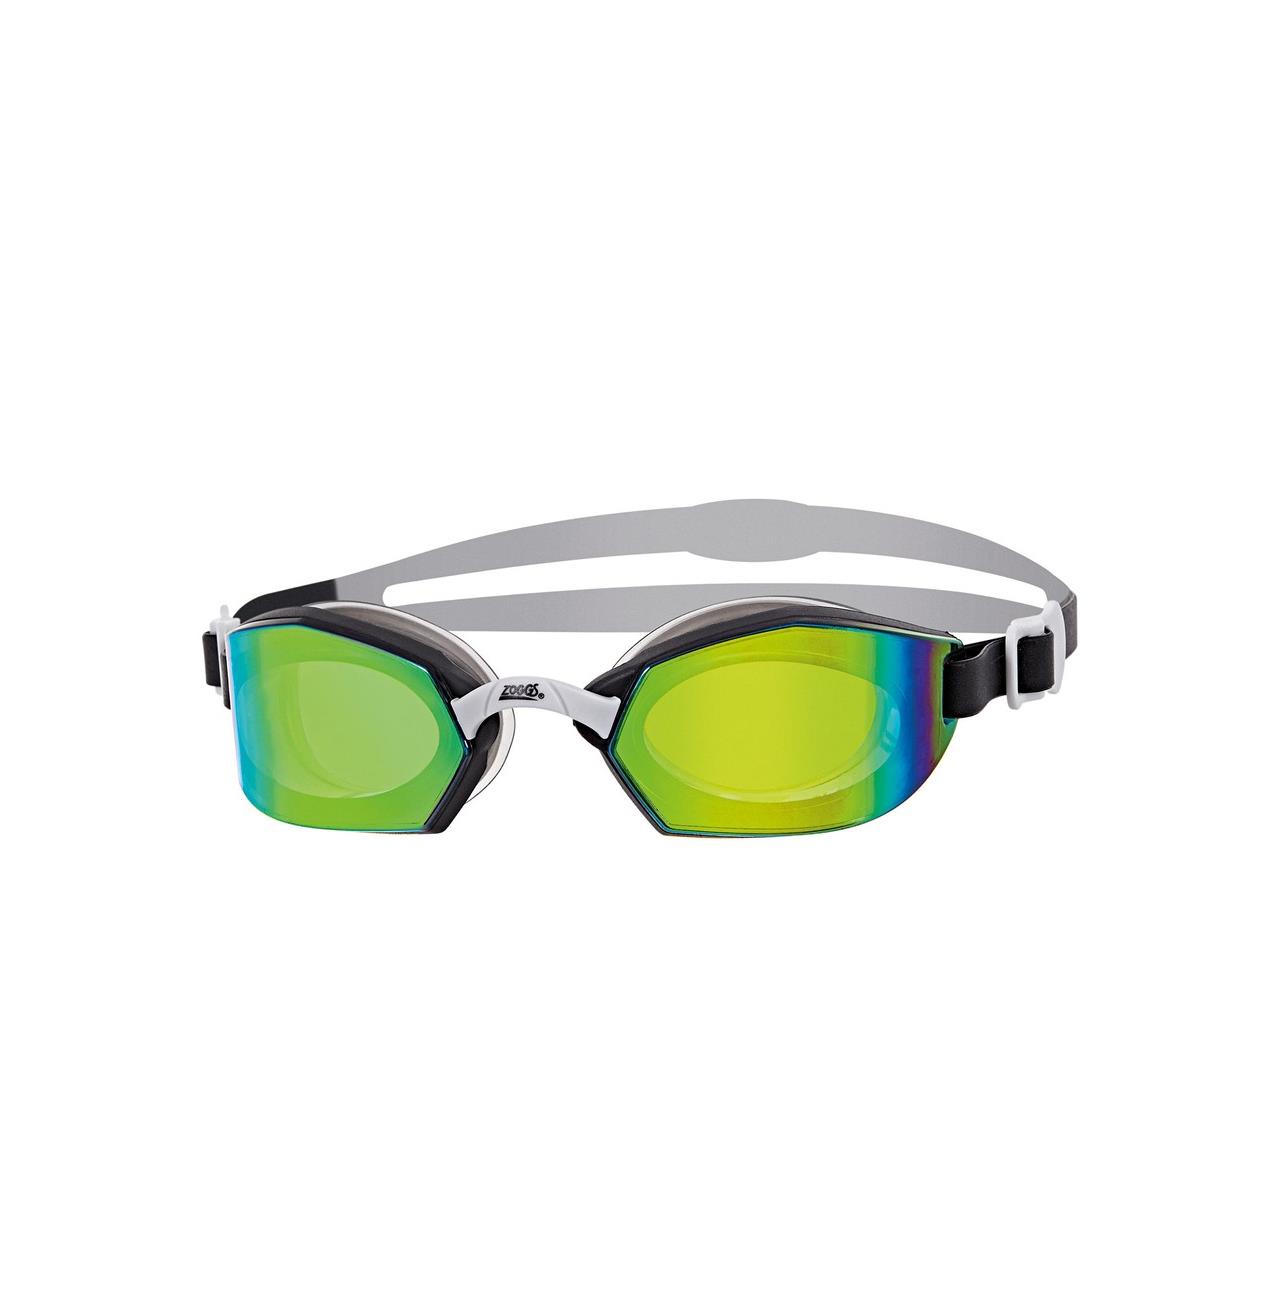 Zoggs Ultima Air Titanium Goggles Black / Silver / Mirror Green